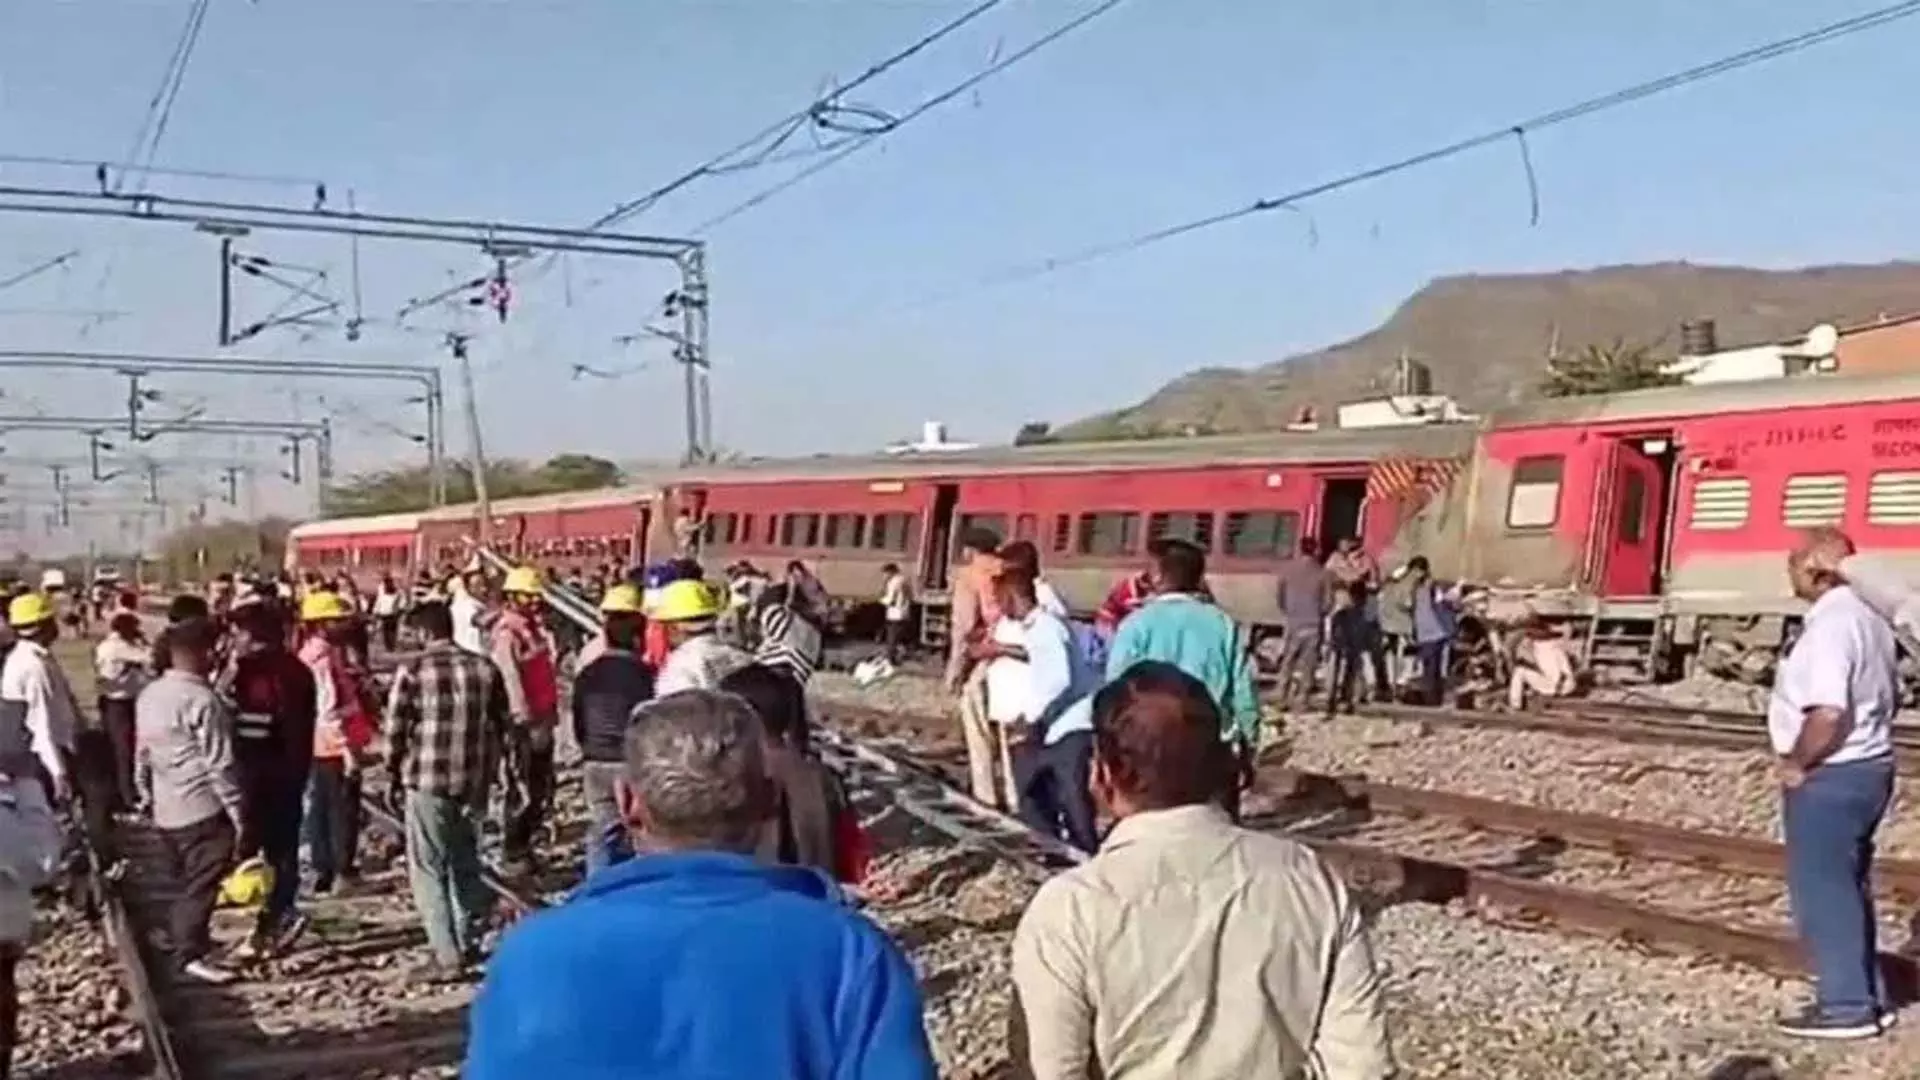 अजमेर में साबरमती-आगरा सुपरफास्ट ट्रेन के 4 डिब्बे पटरी से उतरे | 4 coaches  of Sabarmati-Agra superfast train derailed in Ajmer अजमेर में साबरमती-आगरा  सुपरफास्ट ट्रेन ...